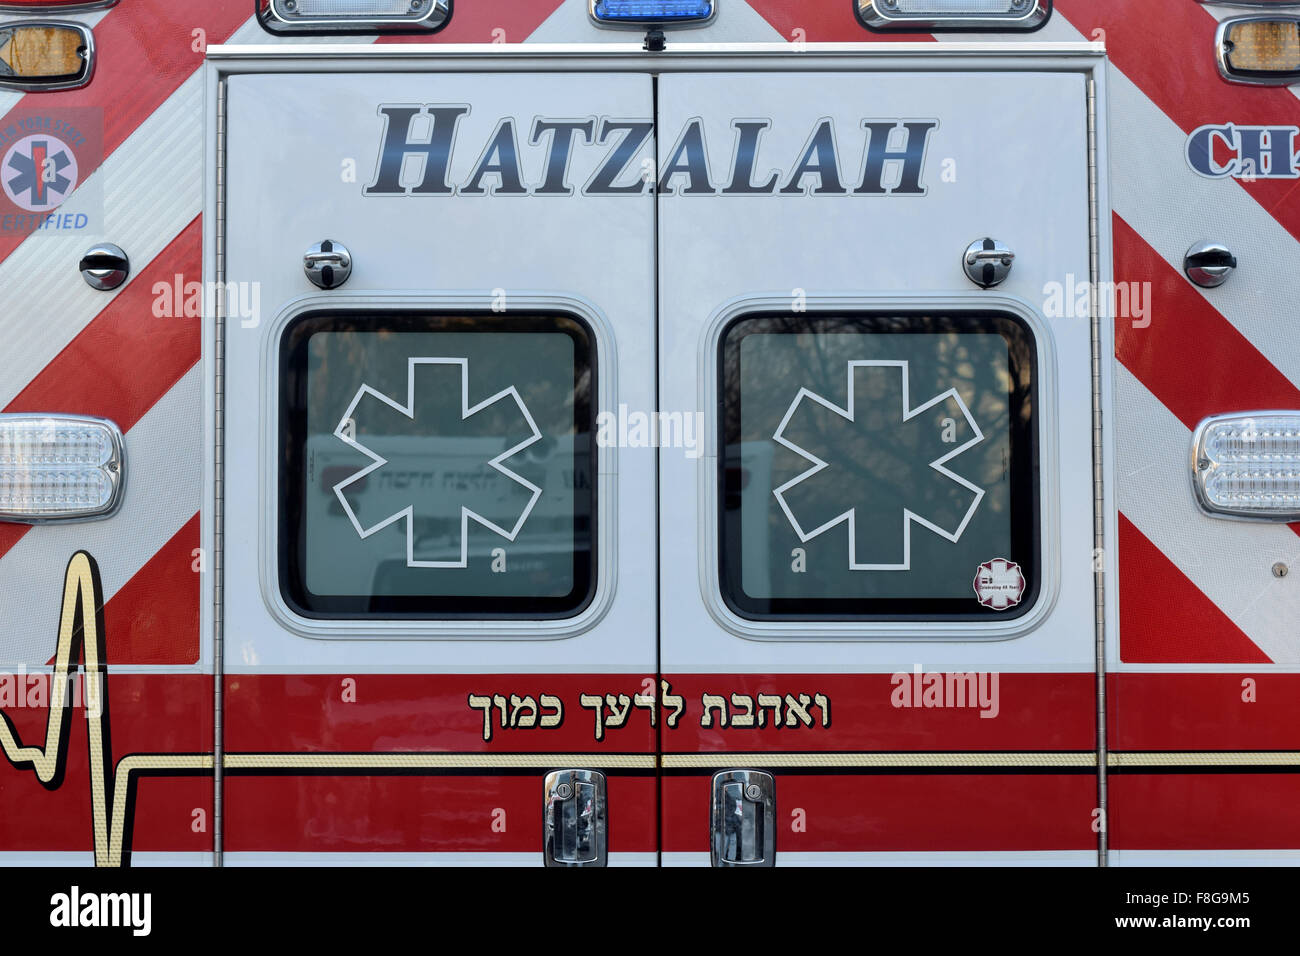 Die Rückseite des einen freiwilligen Hatzalah Ambulanz in Brooklyn mit dem hebräischen Ausdruck "Liebe deinen nächsten wie dich selbst." Stockfoto